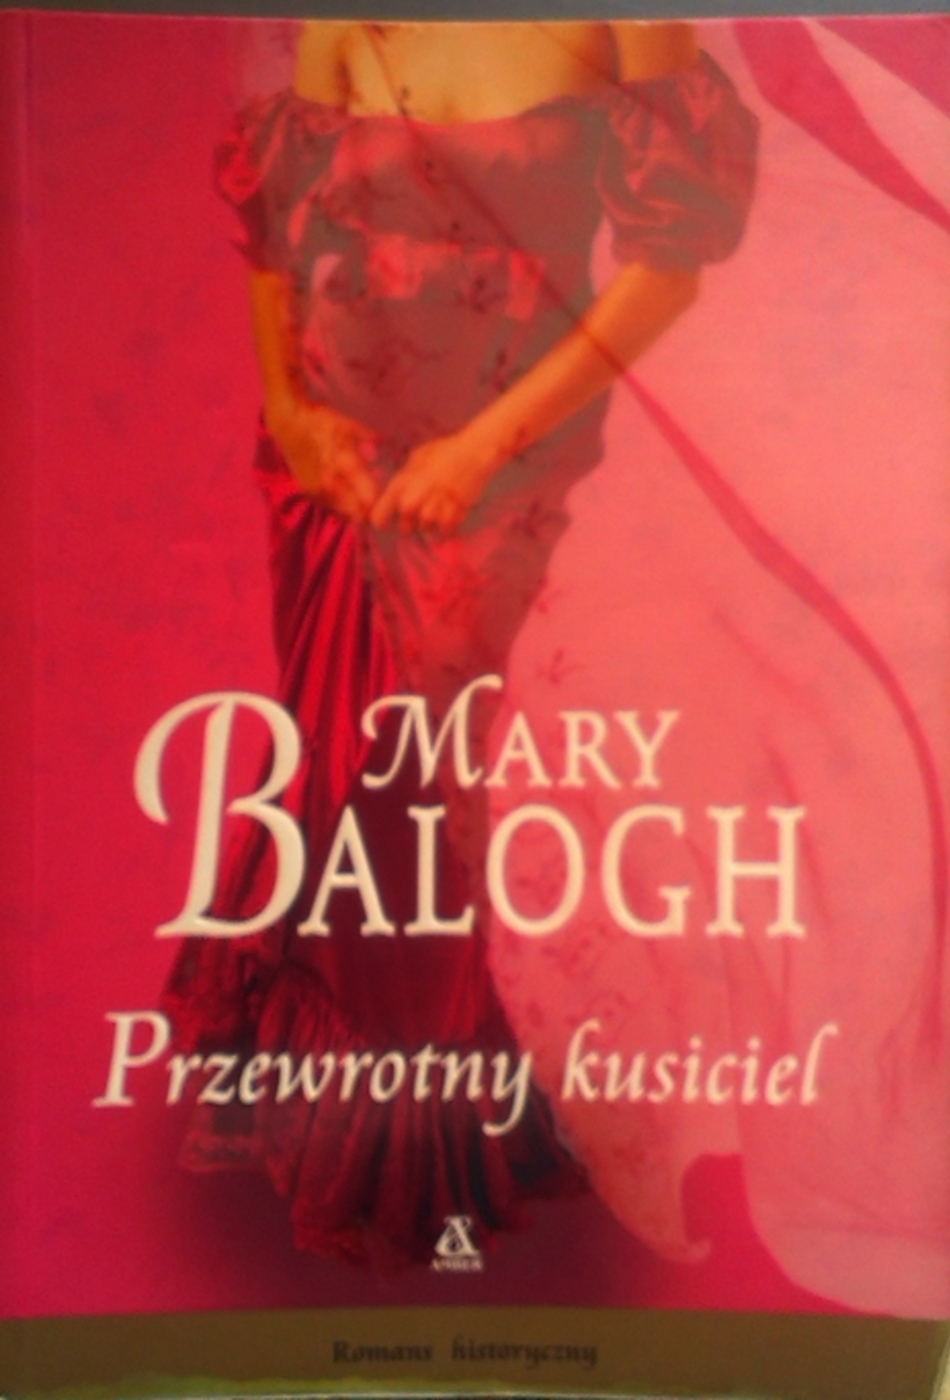 Przewrotny kusiciel (201307) - Mary Balogh - Książka, recenzja ...